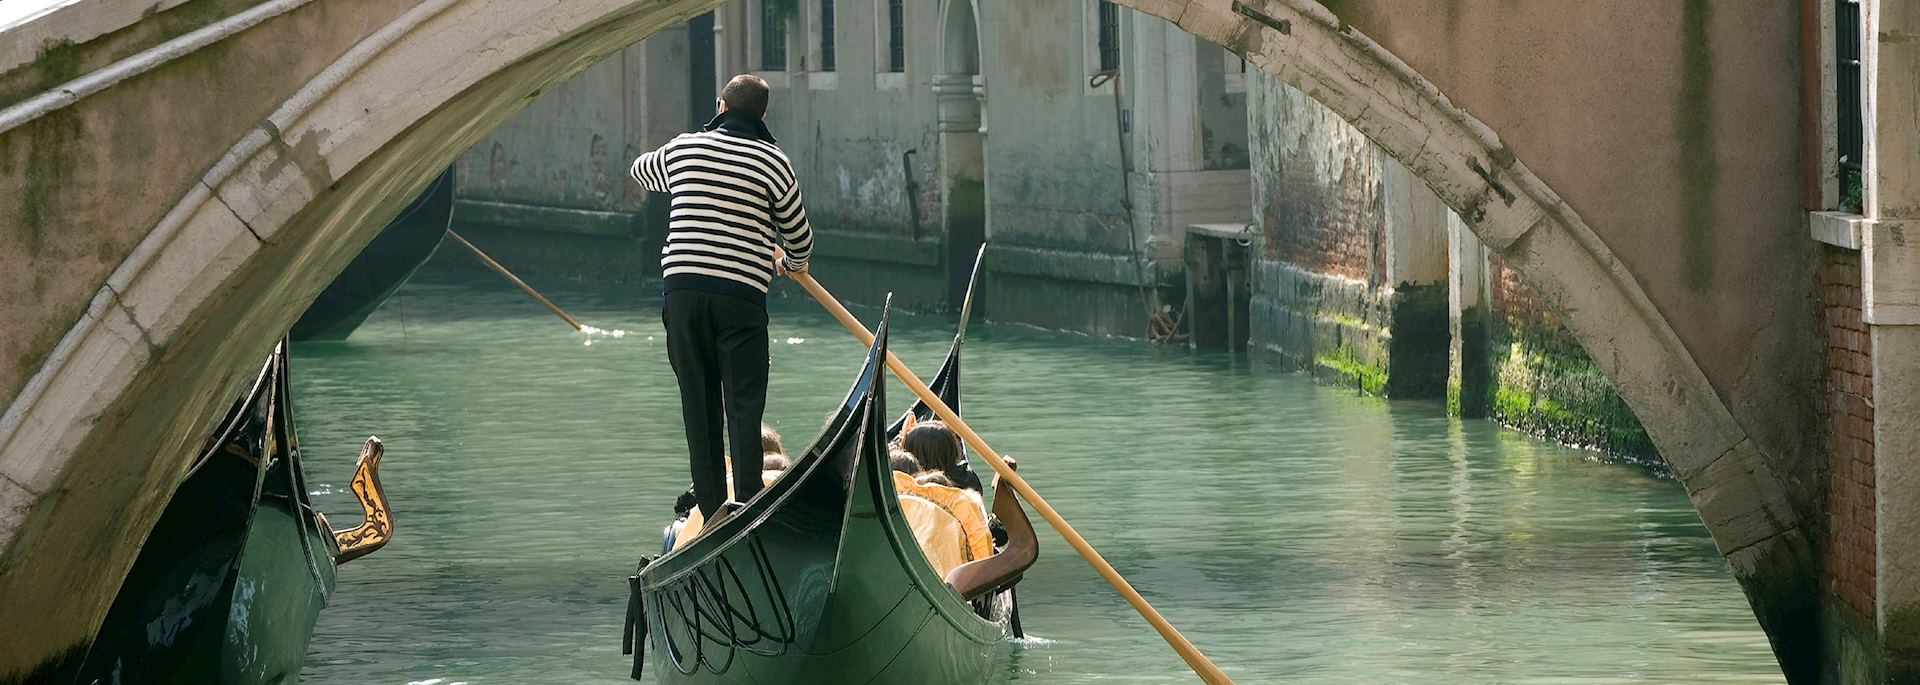 Gondola under an old bridge, Venice